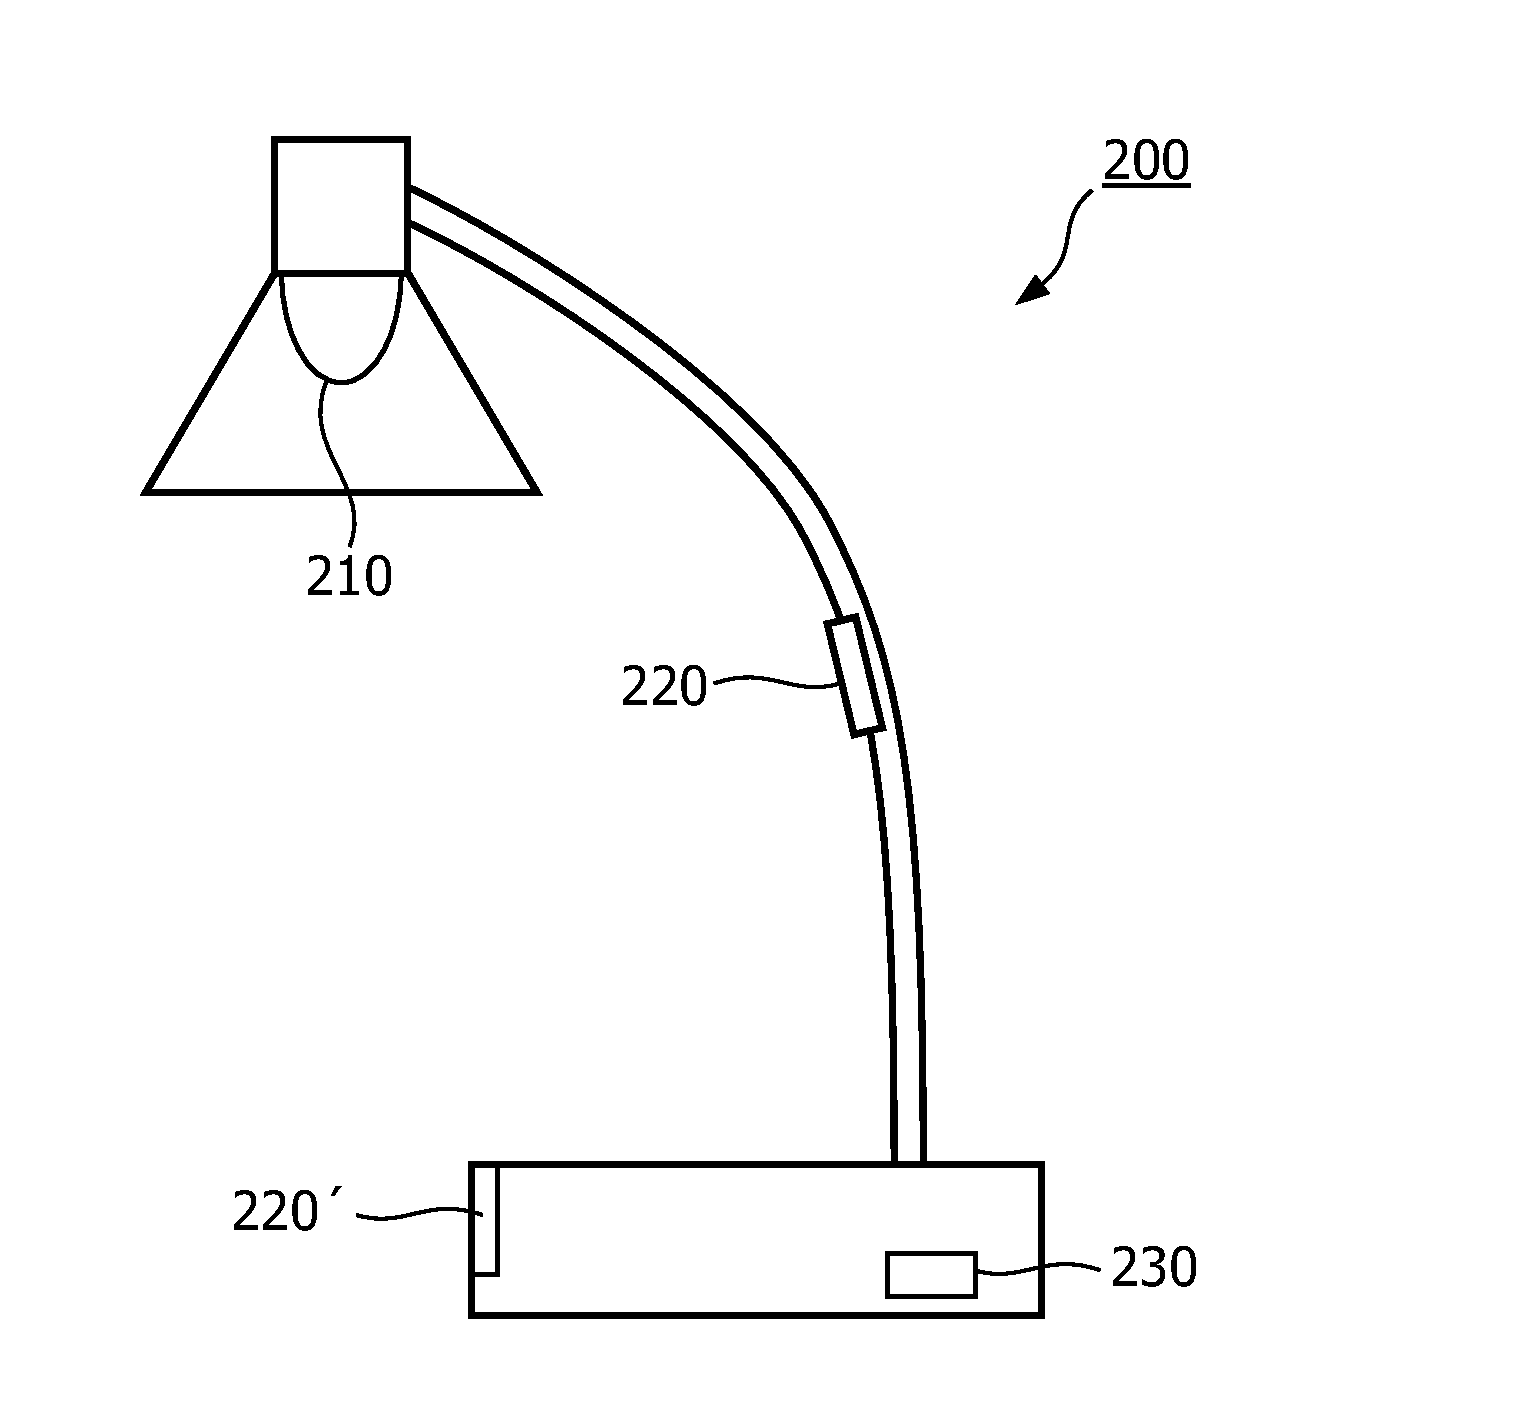 Illumination apparatus and method